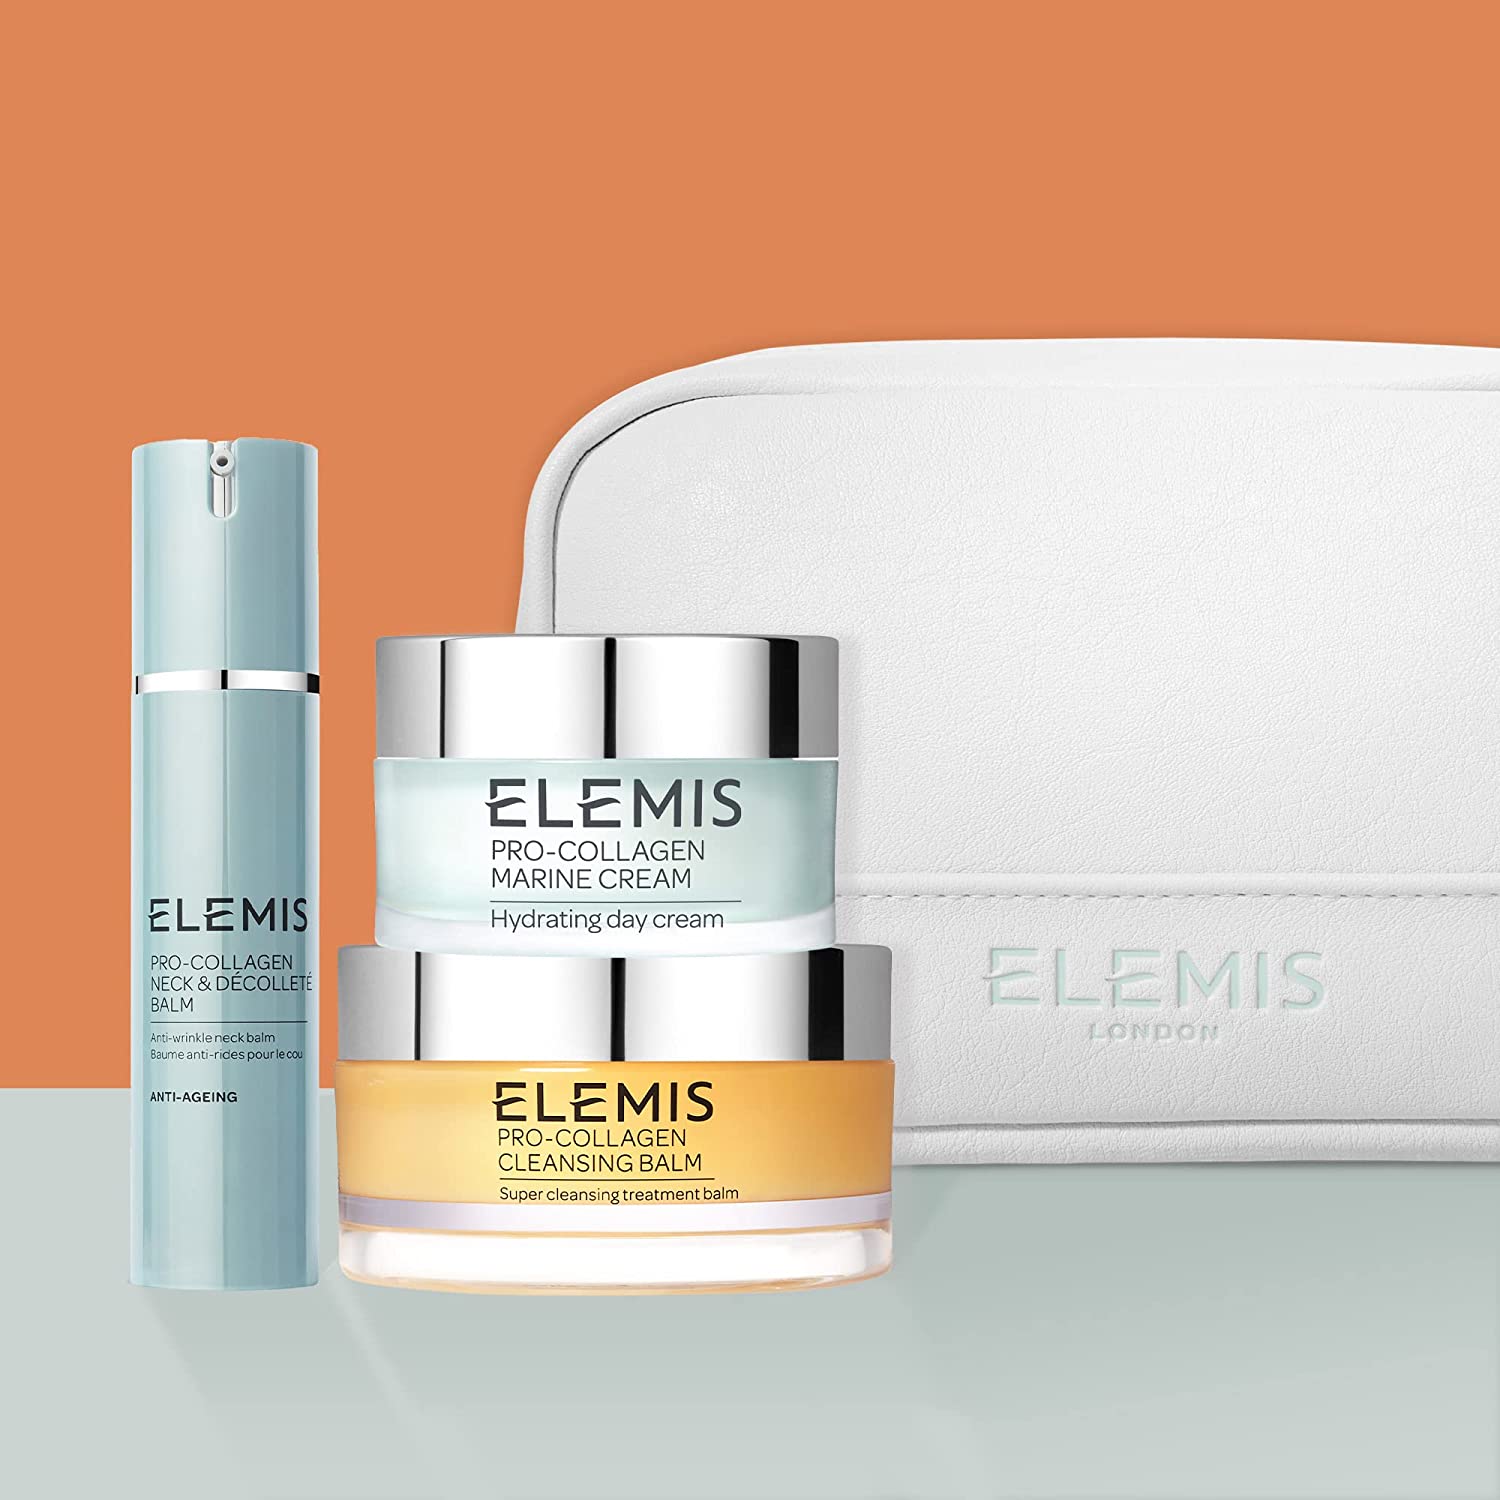 ELEMIS Pro-Collagen Skincare Trio 2022